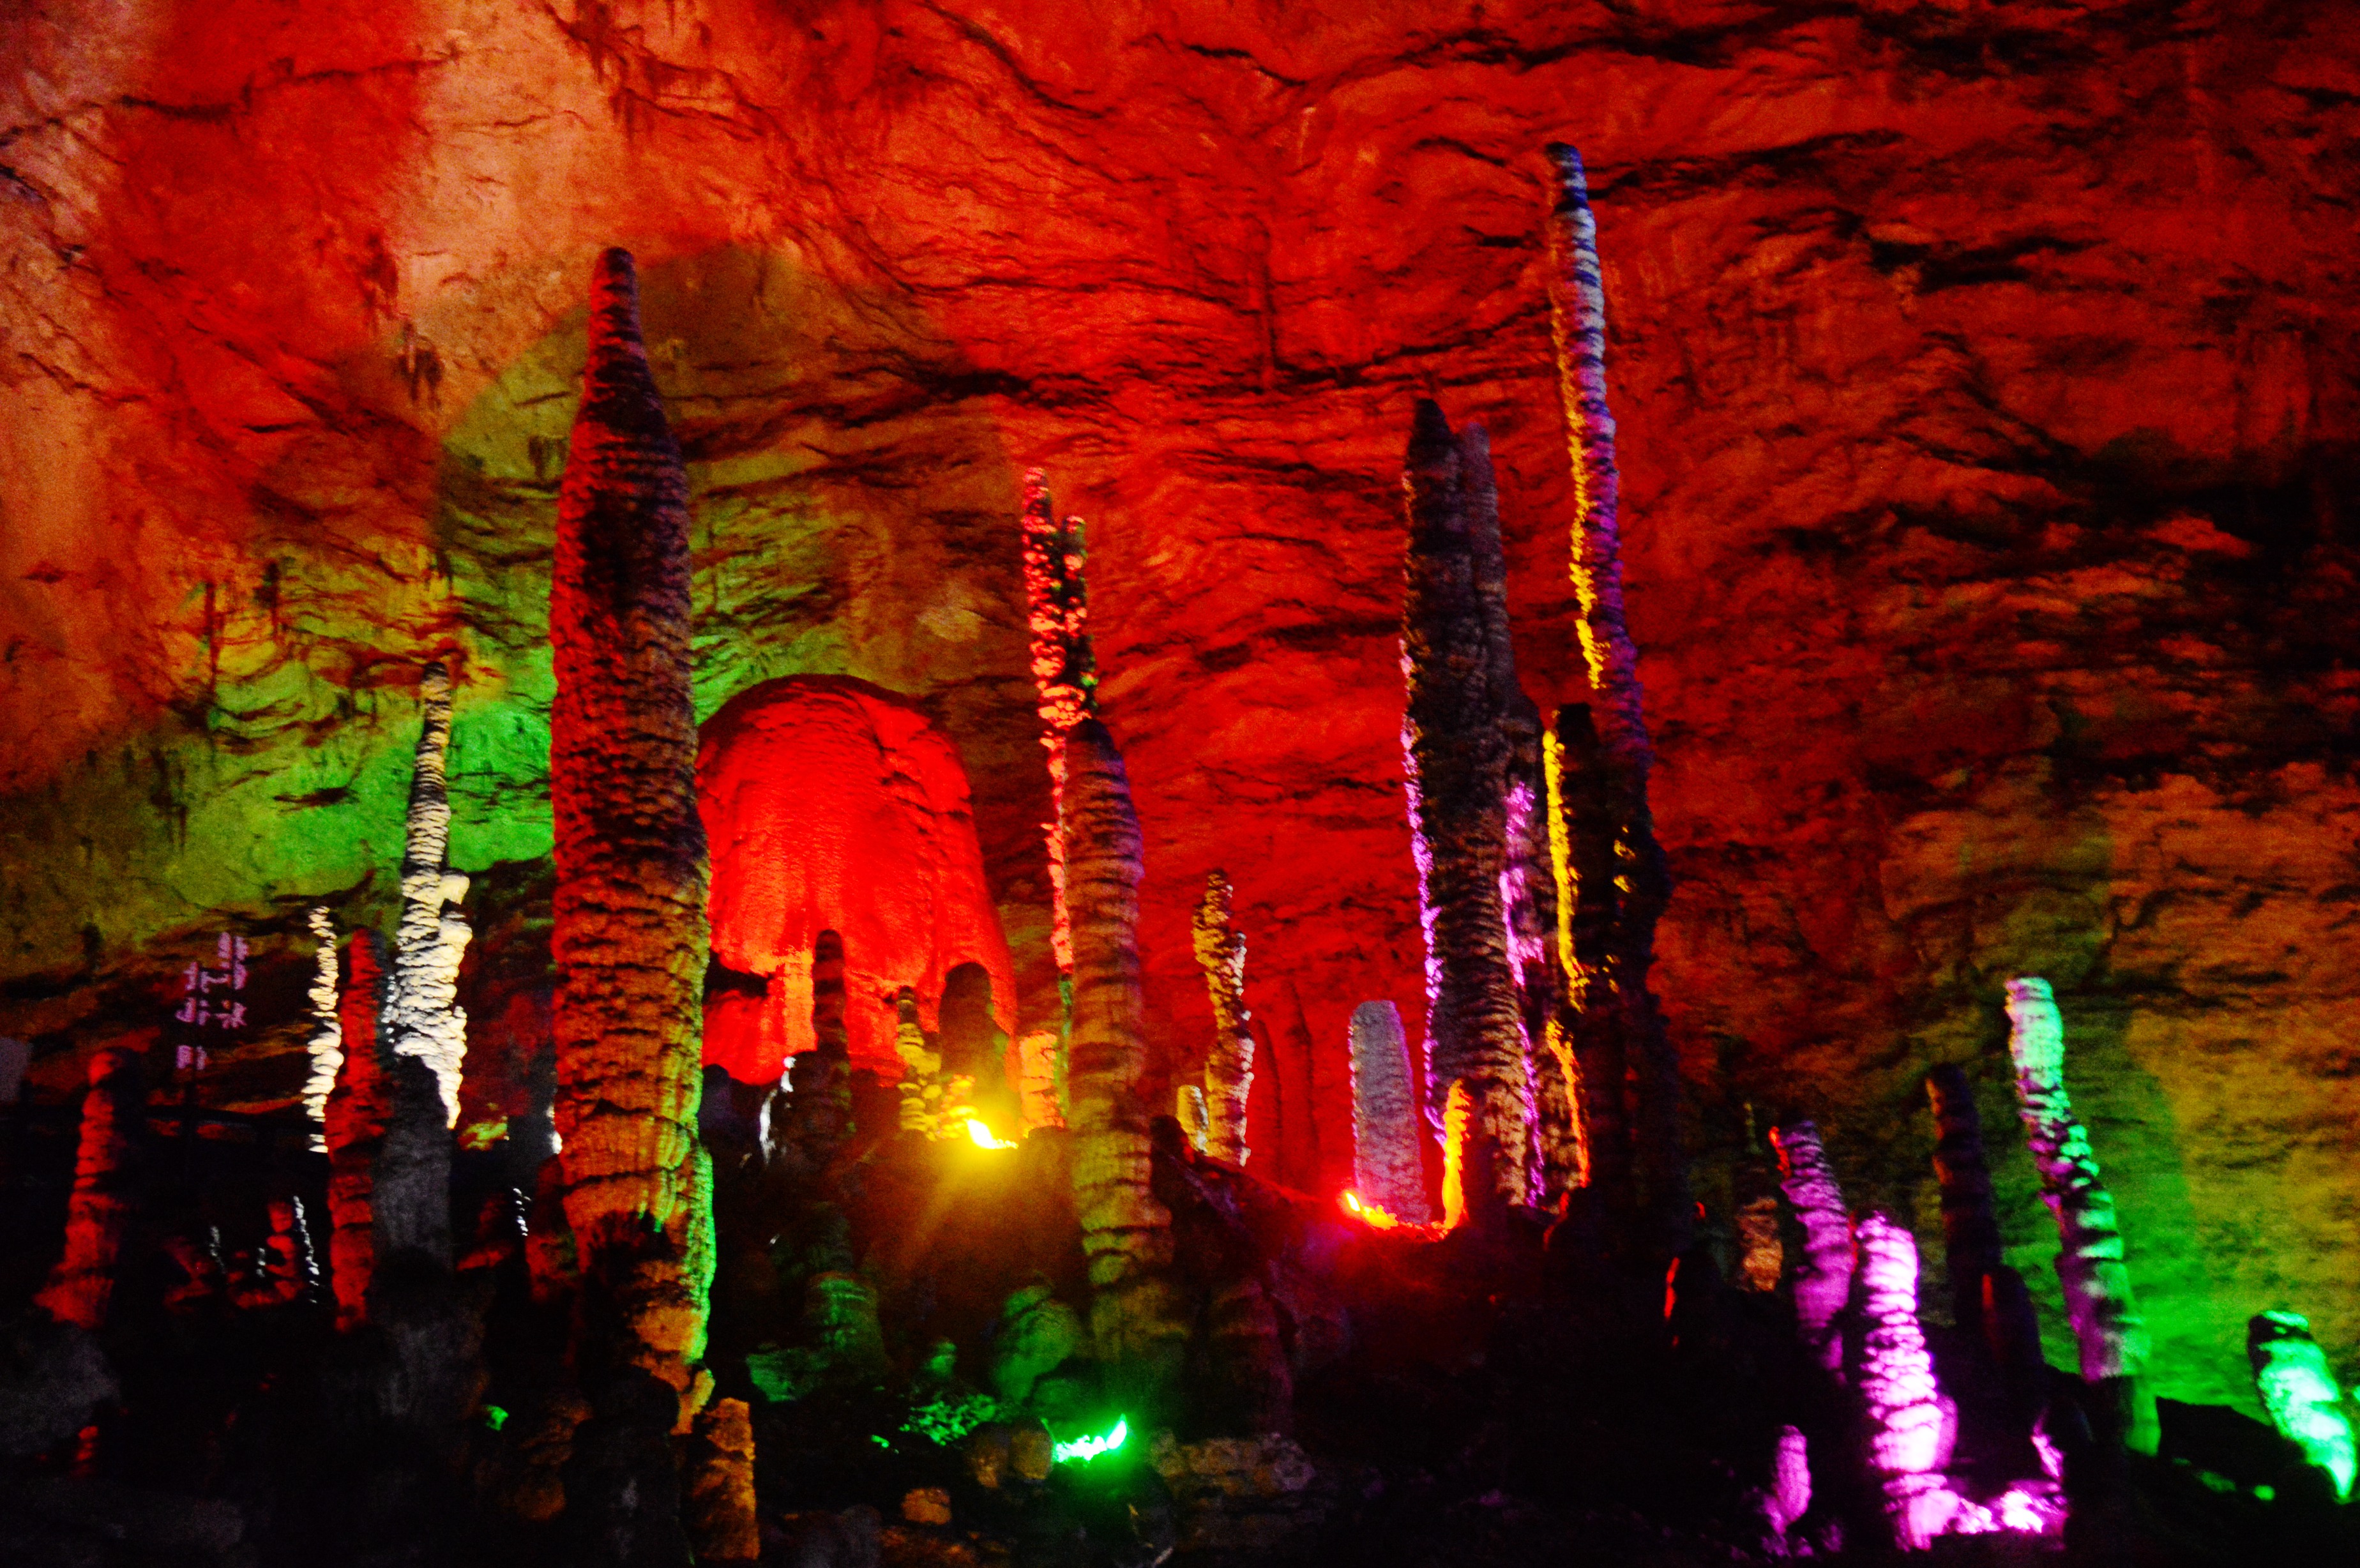 奇观的黄龙洞 邓道理 摄3月27日,一批游客进入武陵源黄龙洞景区游览